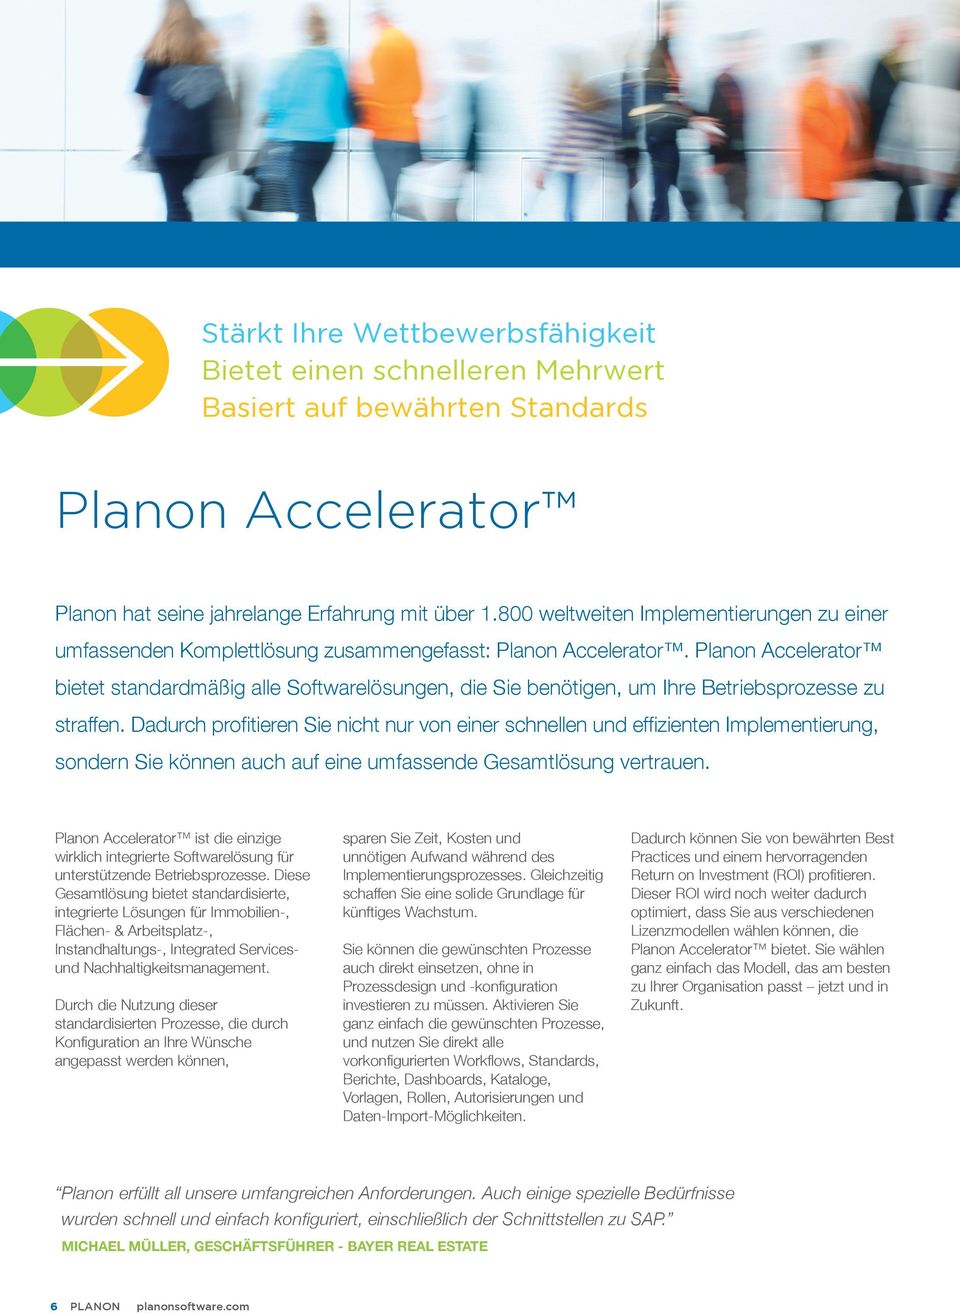 Planon Accelerator bietet standardmäßig alle Softwarelösungen, die Sie benötigen, um Ihre Betriebsprozesse zu straffen.